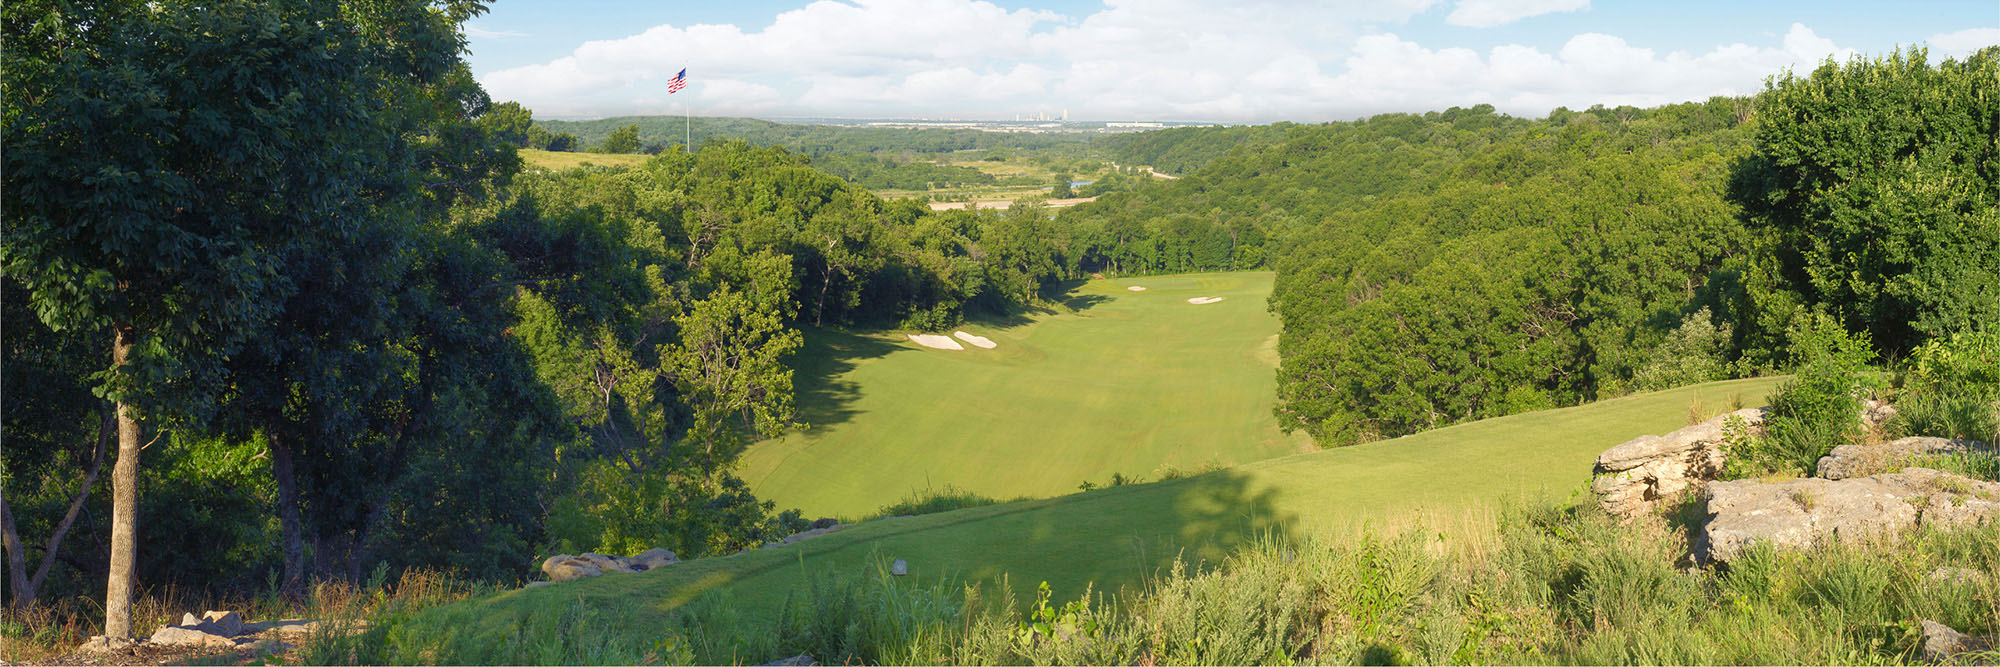 Golf Course Image - Patriot No. 1